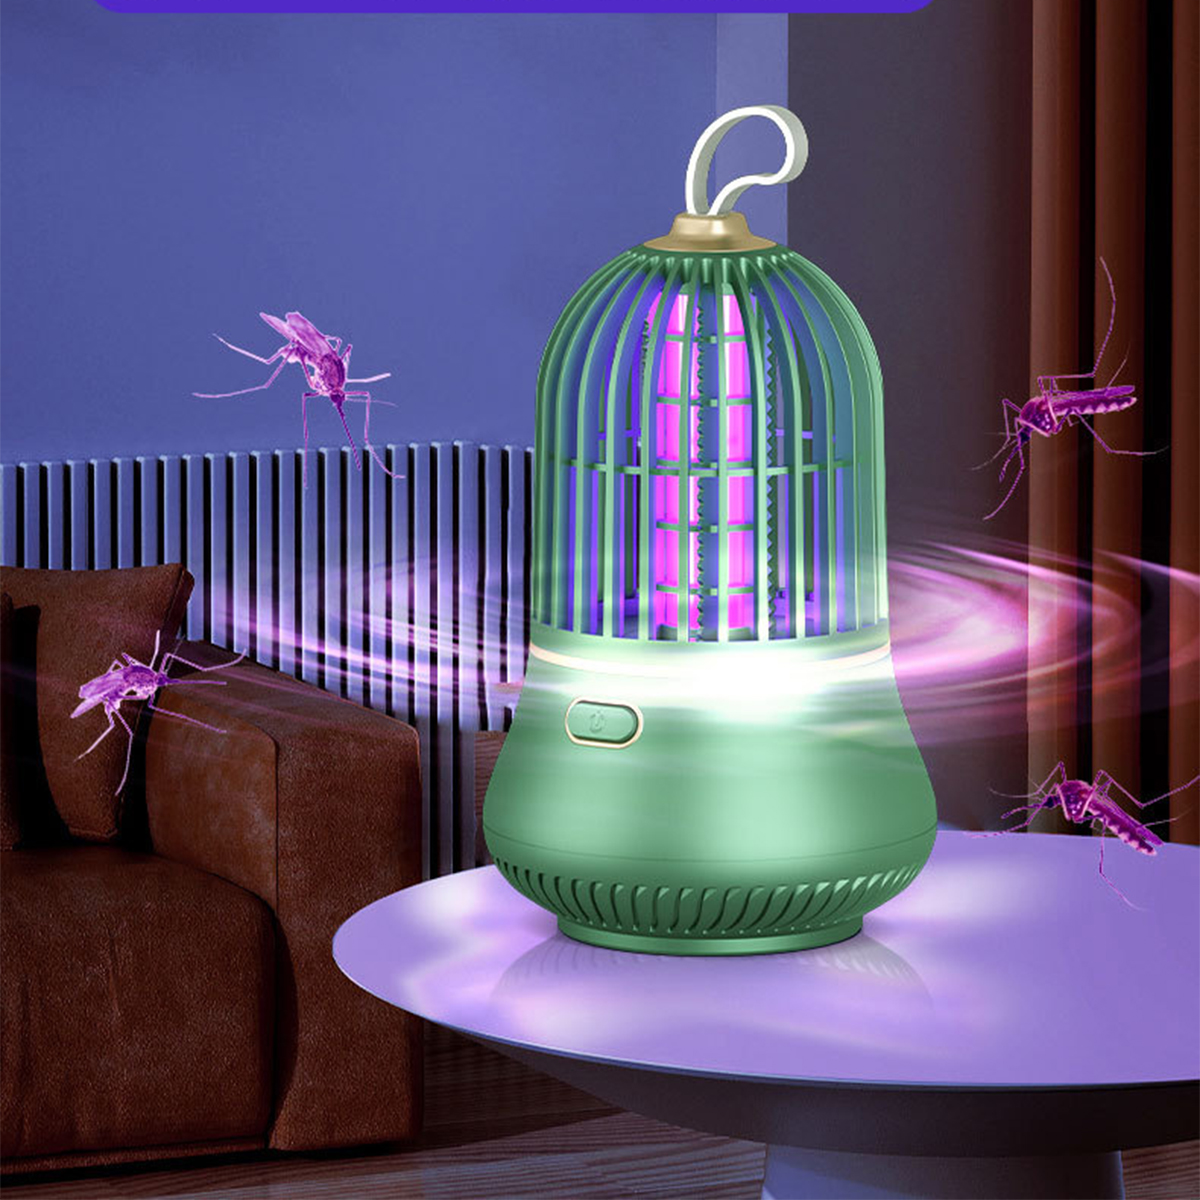 BRIGHTAKE USB-LED Moskito Killer für leise und Insektenvernichter effektive Lampe Schädlingsbekämpfung